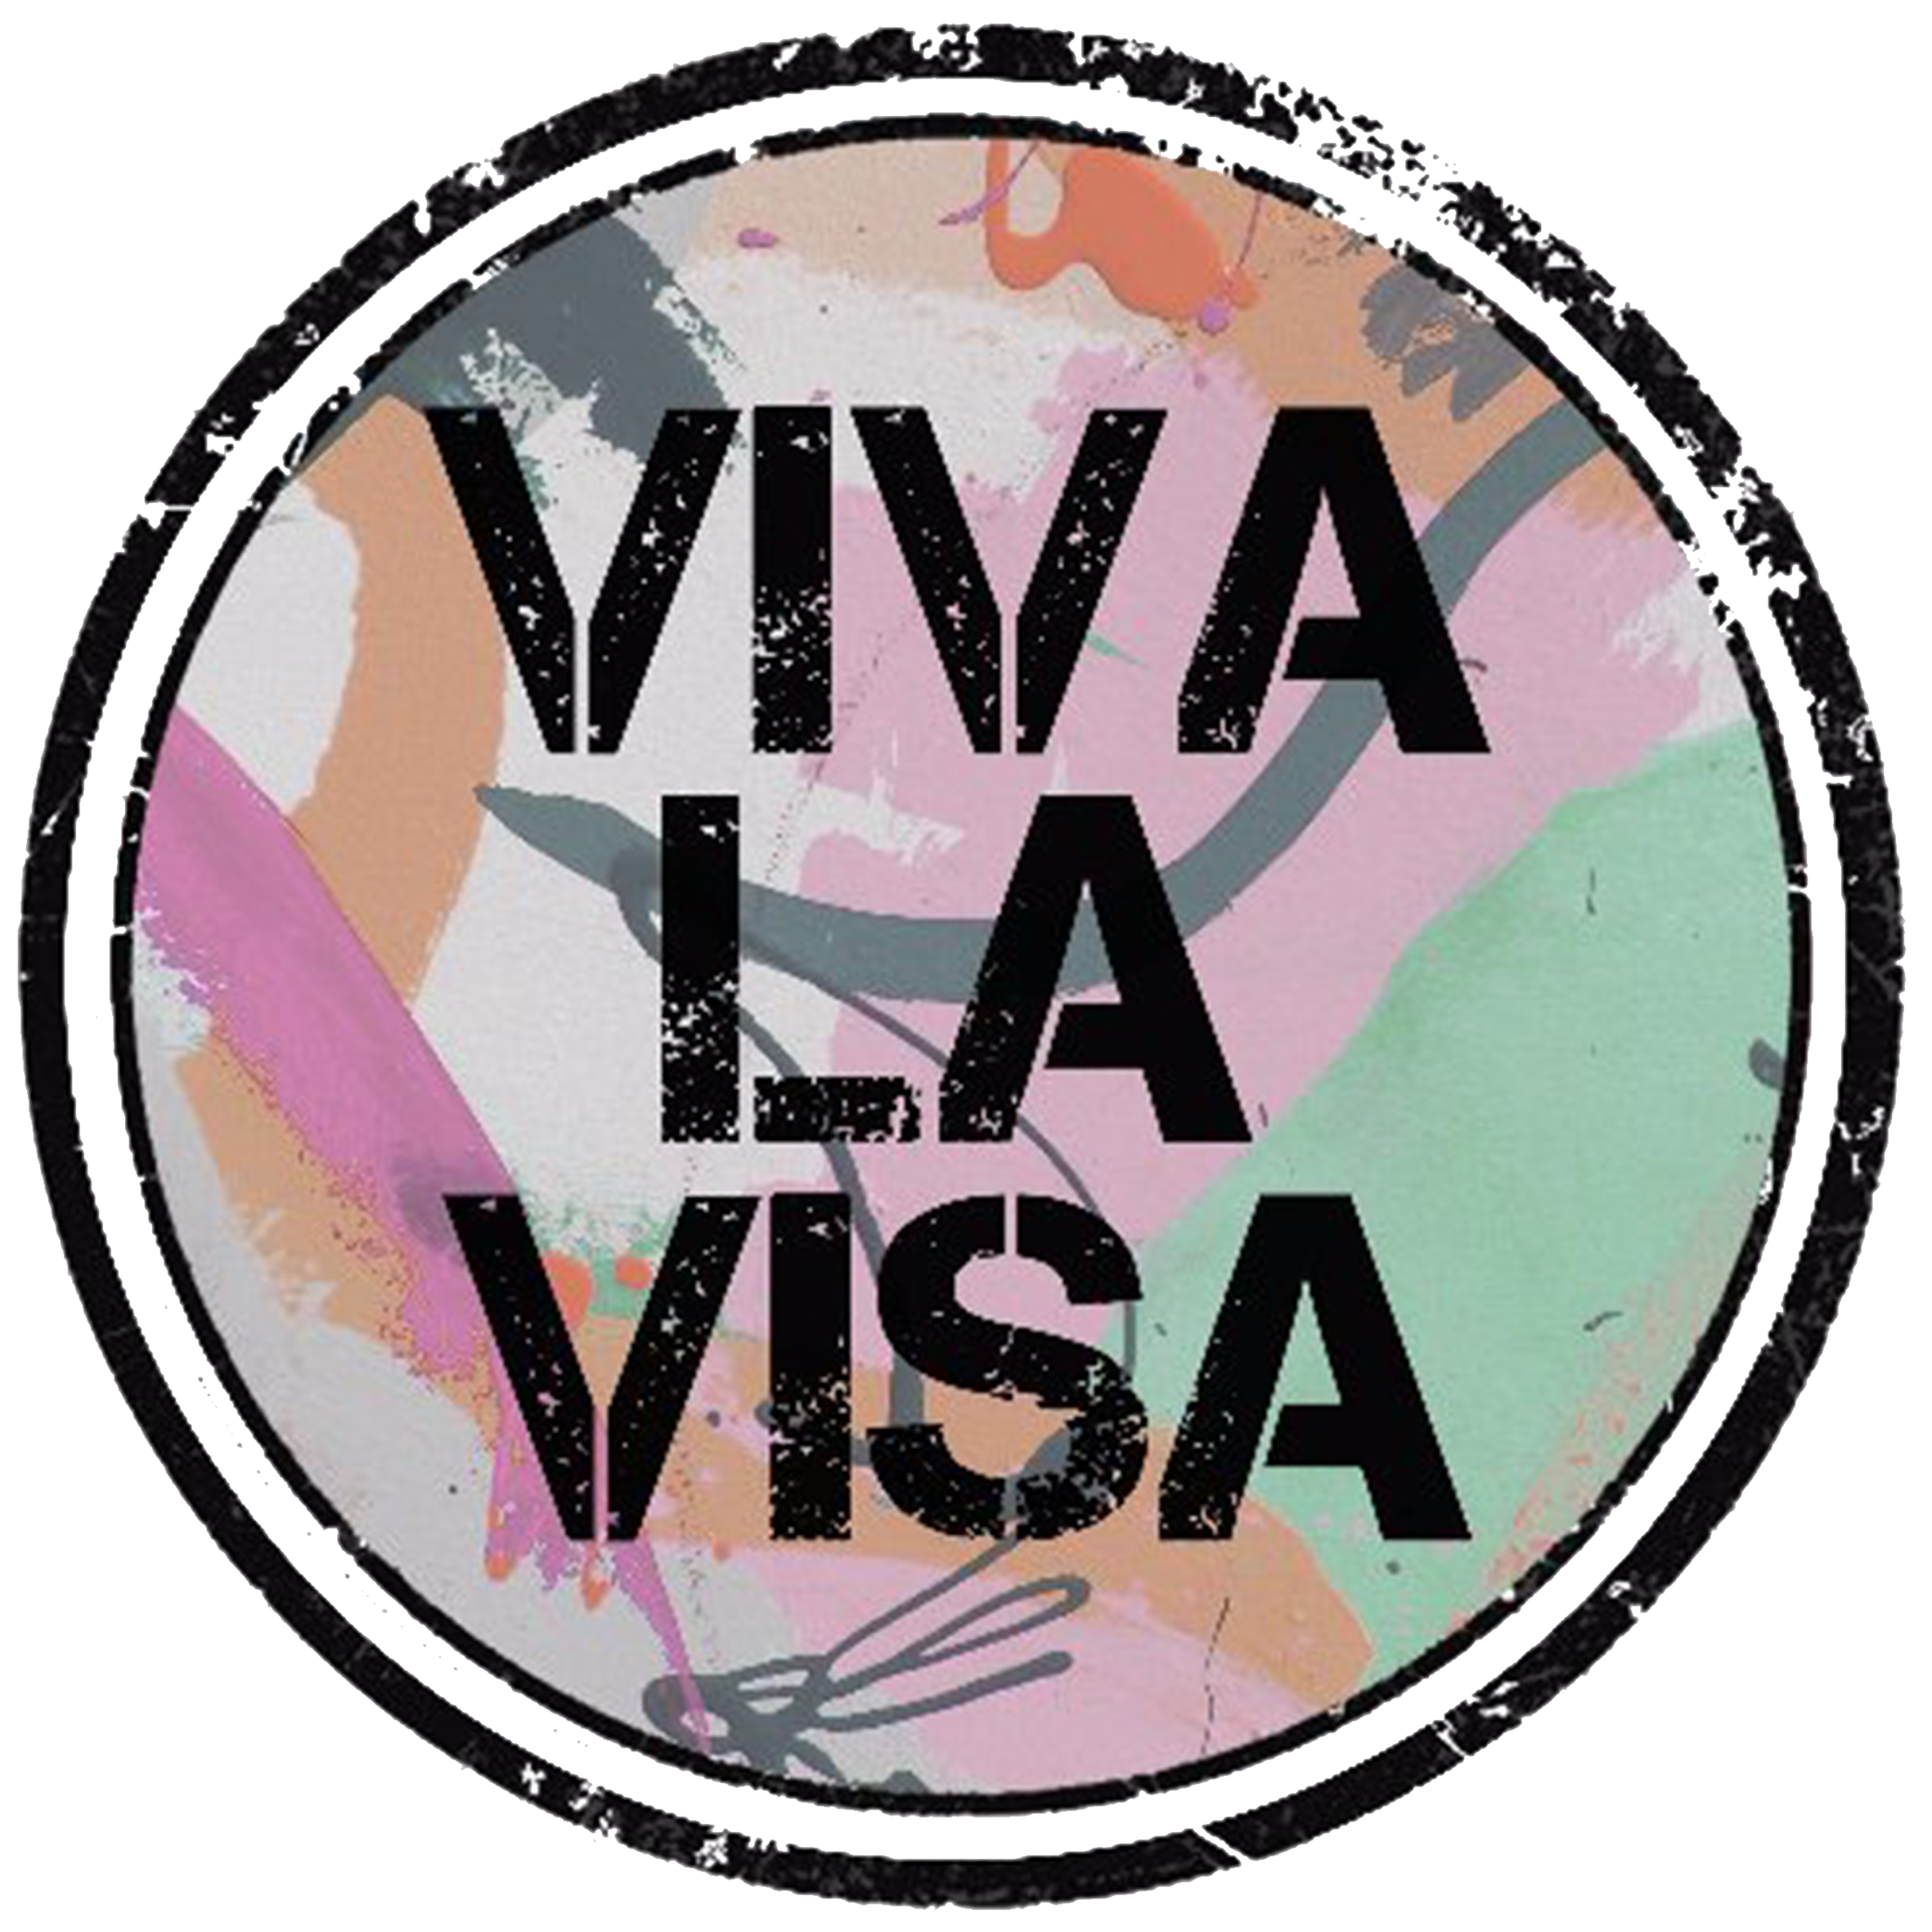 Viva La Visa